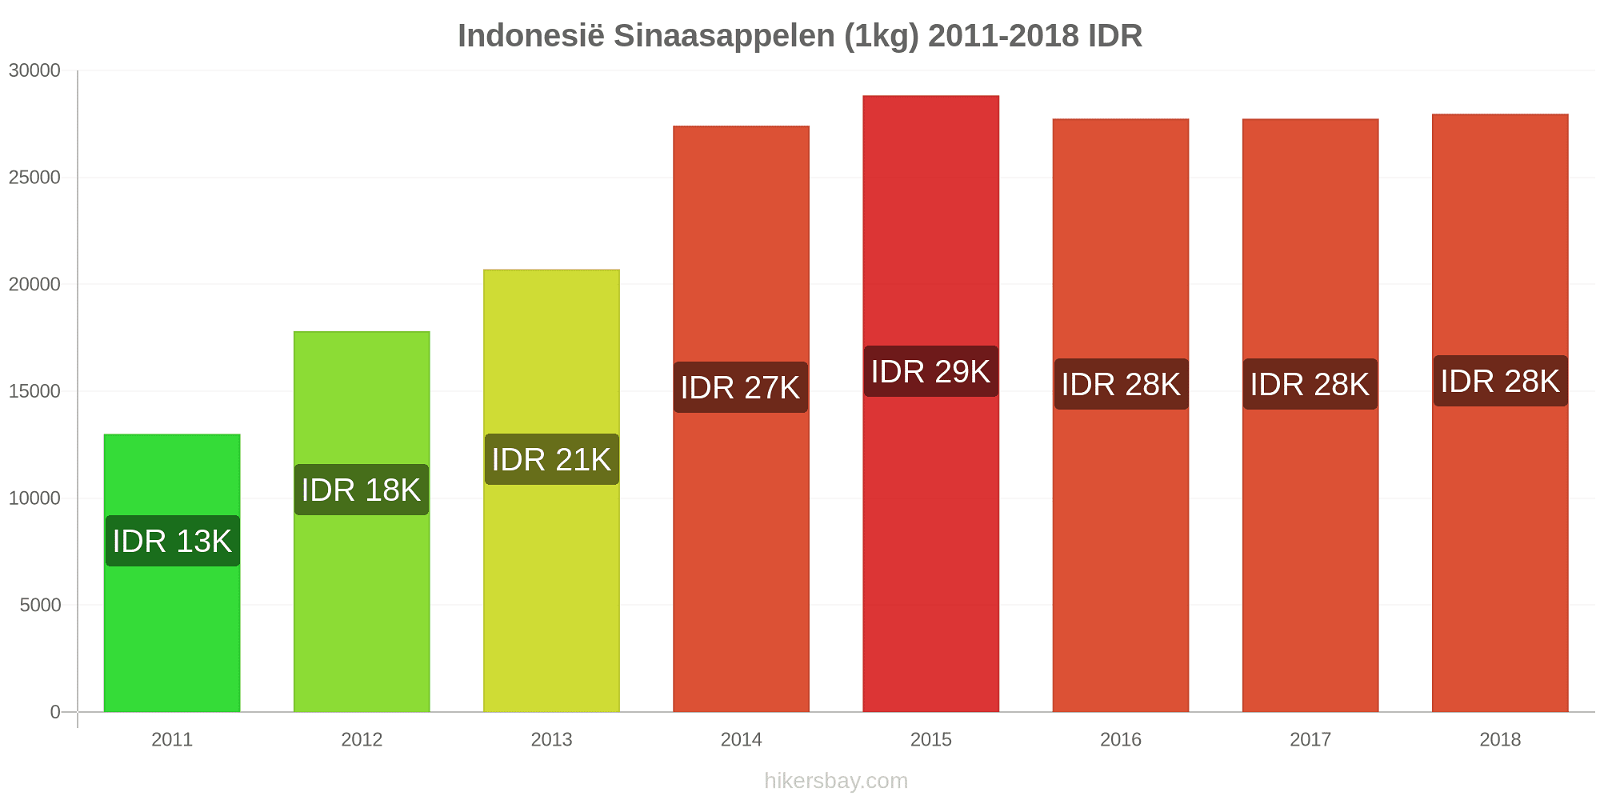 Indonesië prijswijzigingen Sinaasappels (1kg) hikersbay.com